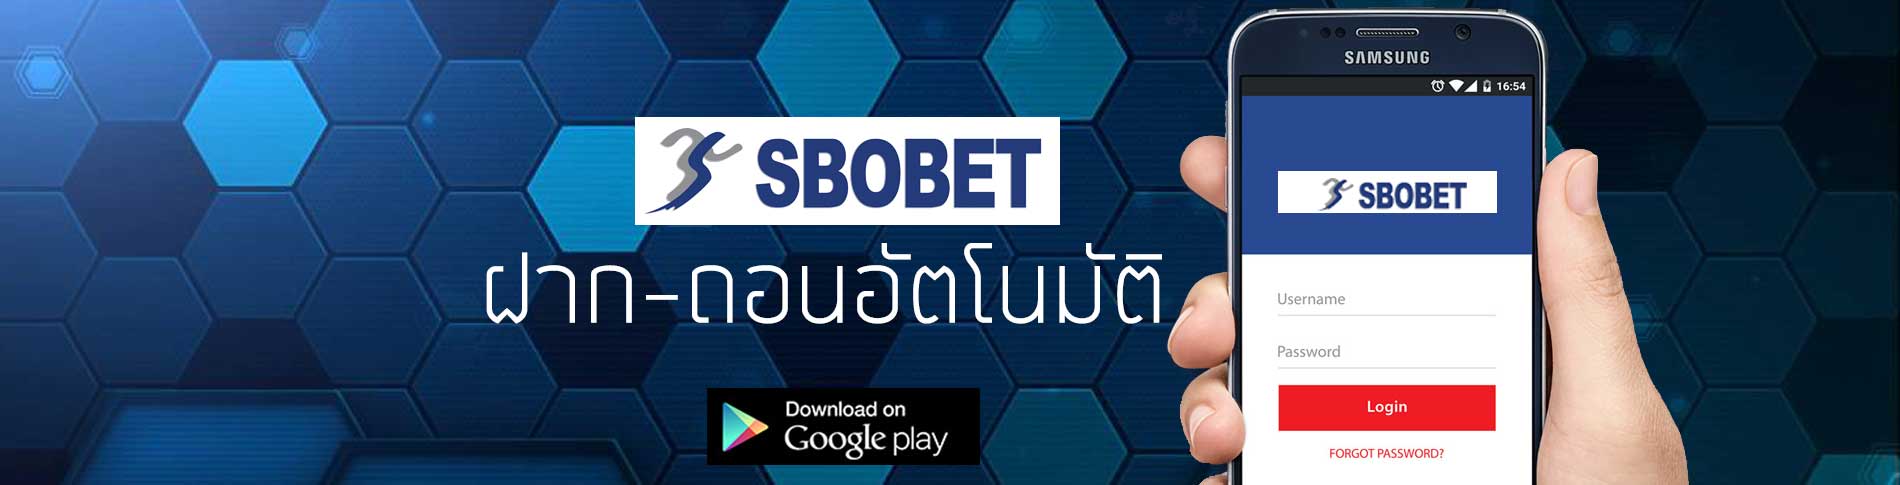 Ibcbet Mobile ช่องทางเข้า แทงบอลออนไลน์บนมือถือที่ดีที่สุดในประเทศไทย